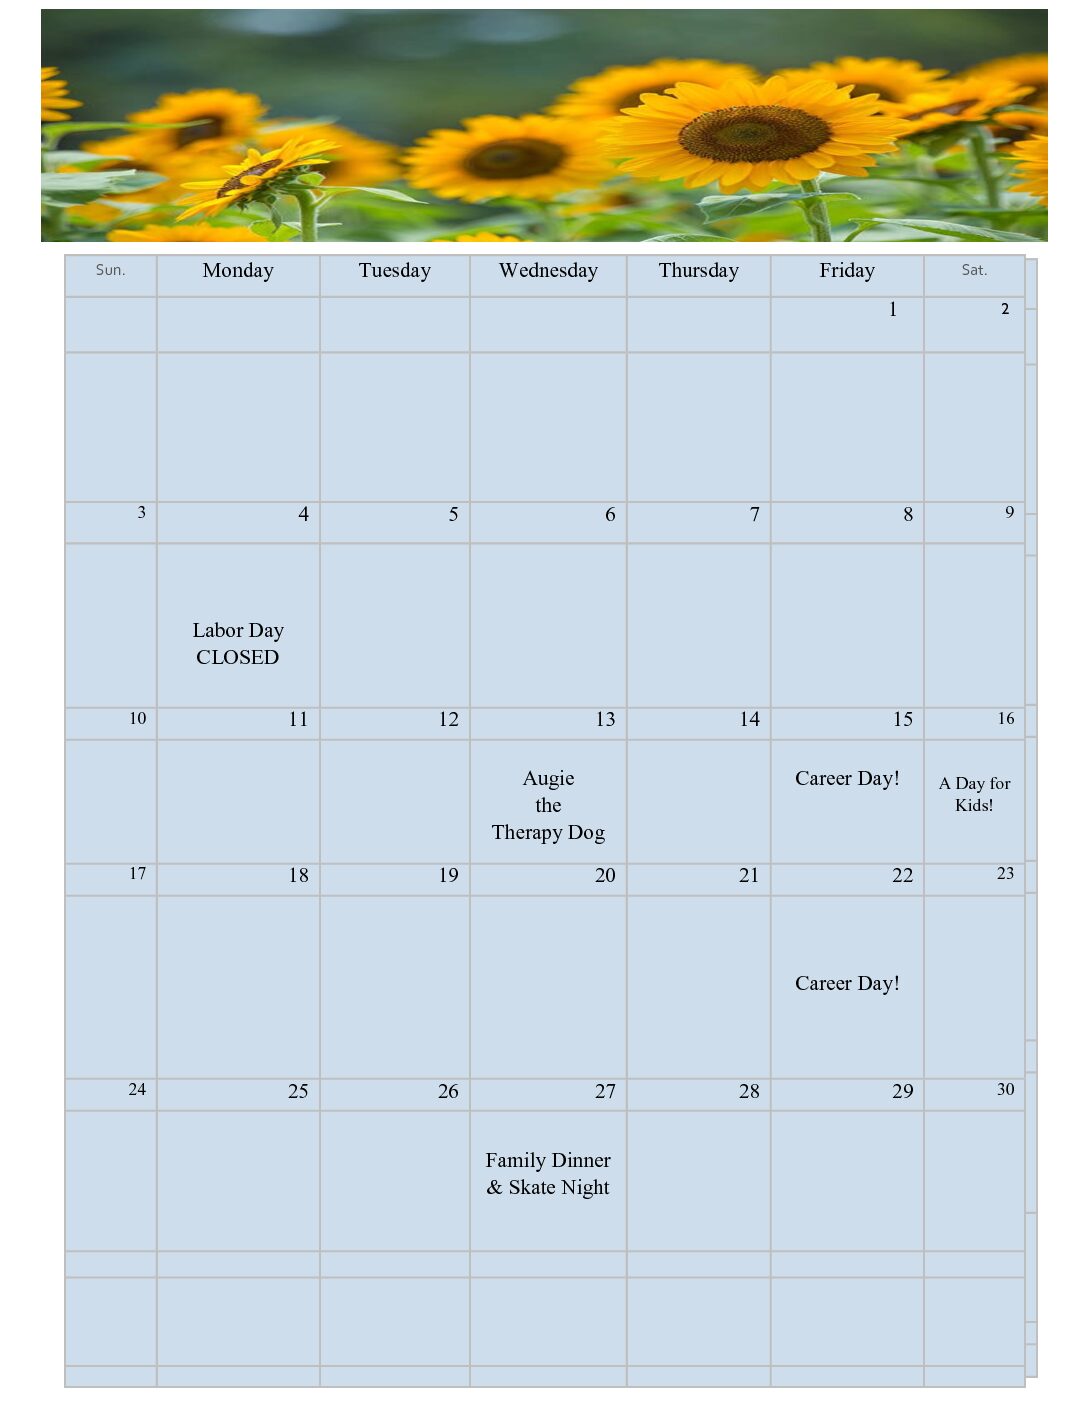 McKinleyville Teen Center's Calendar